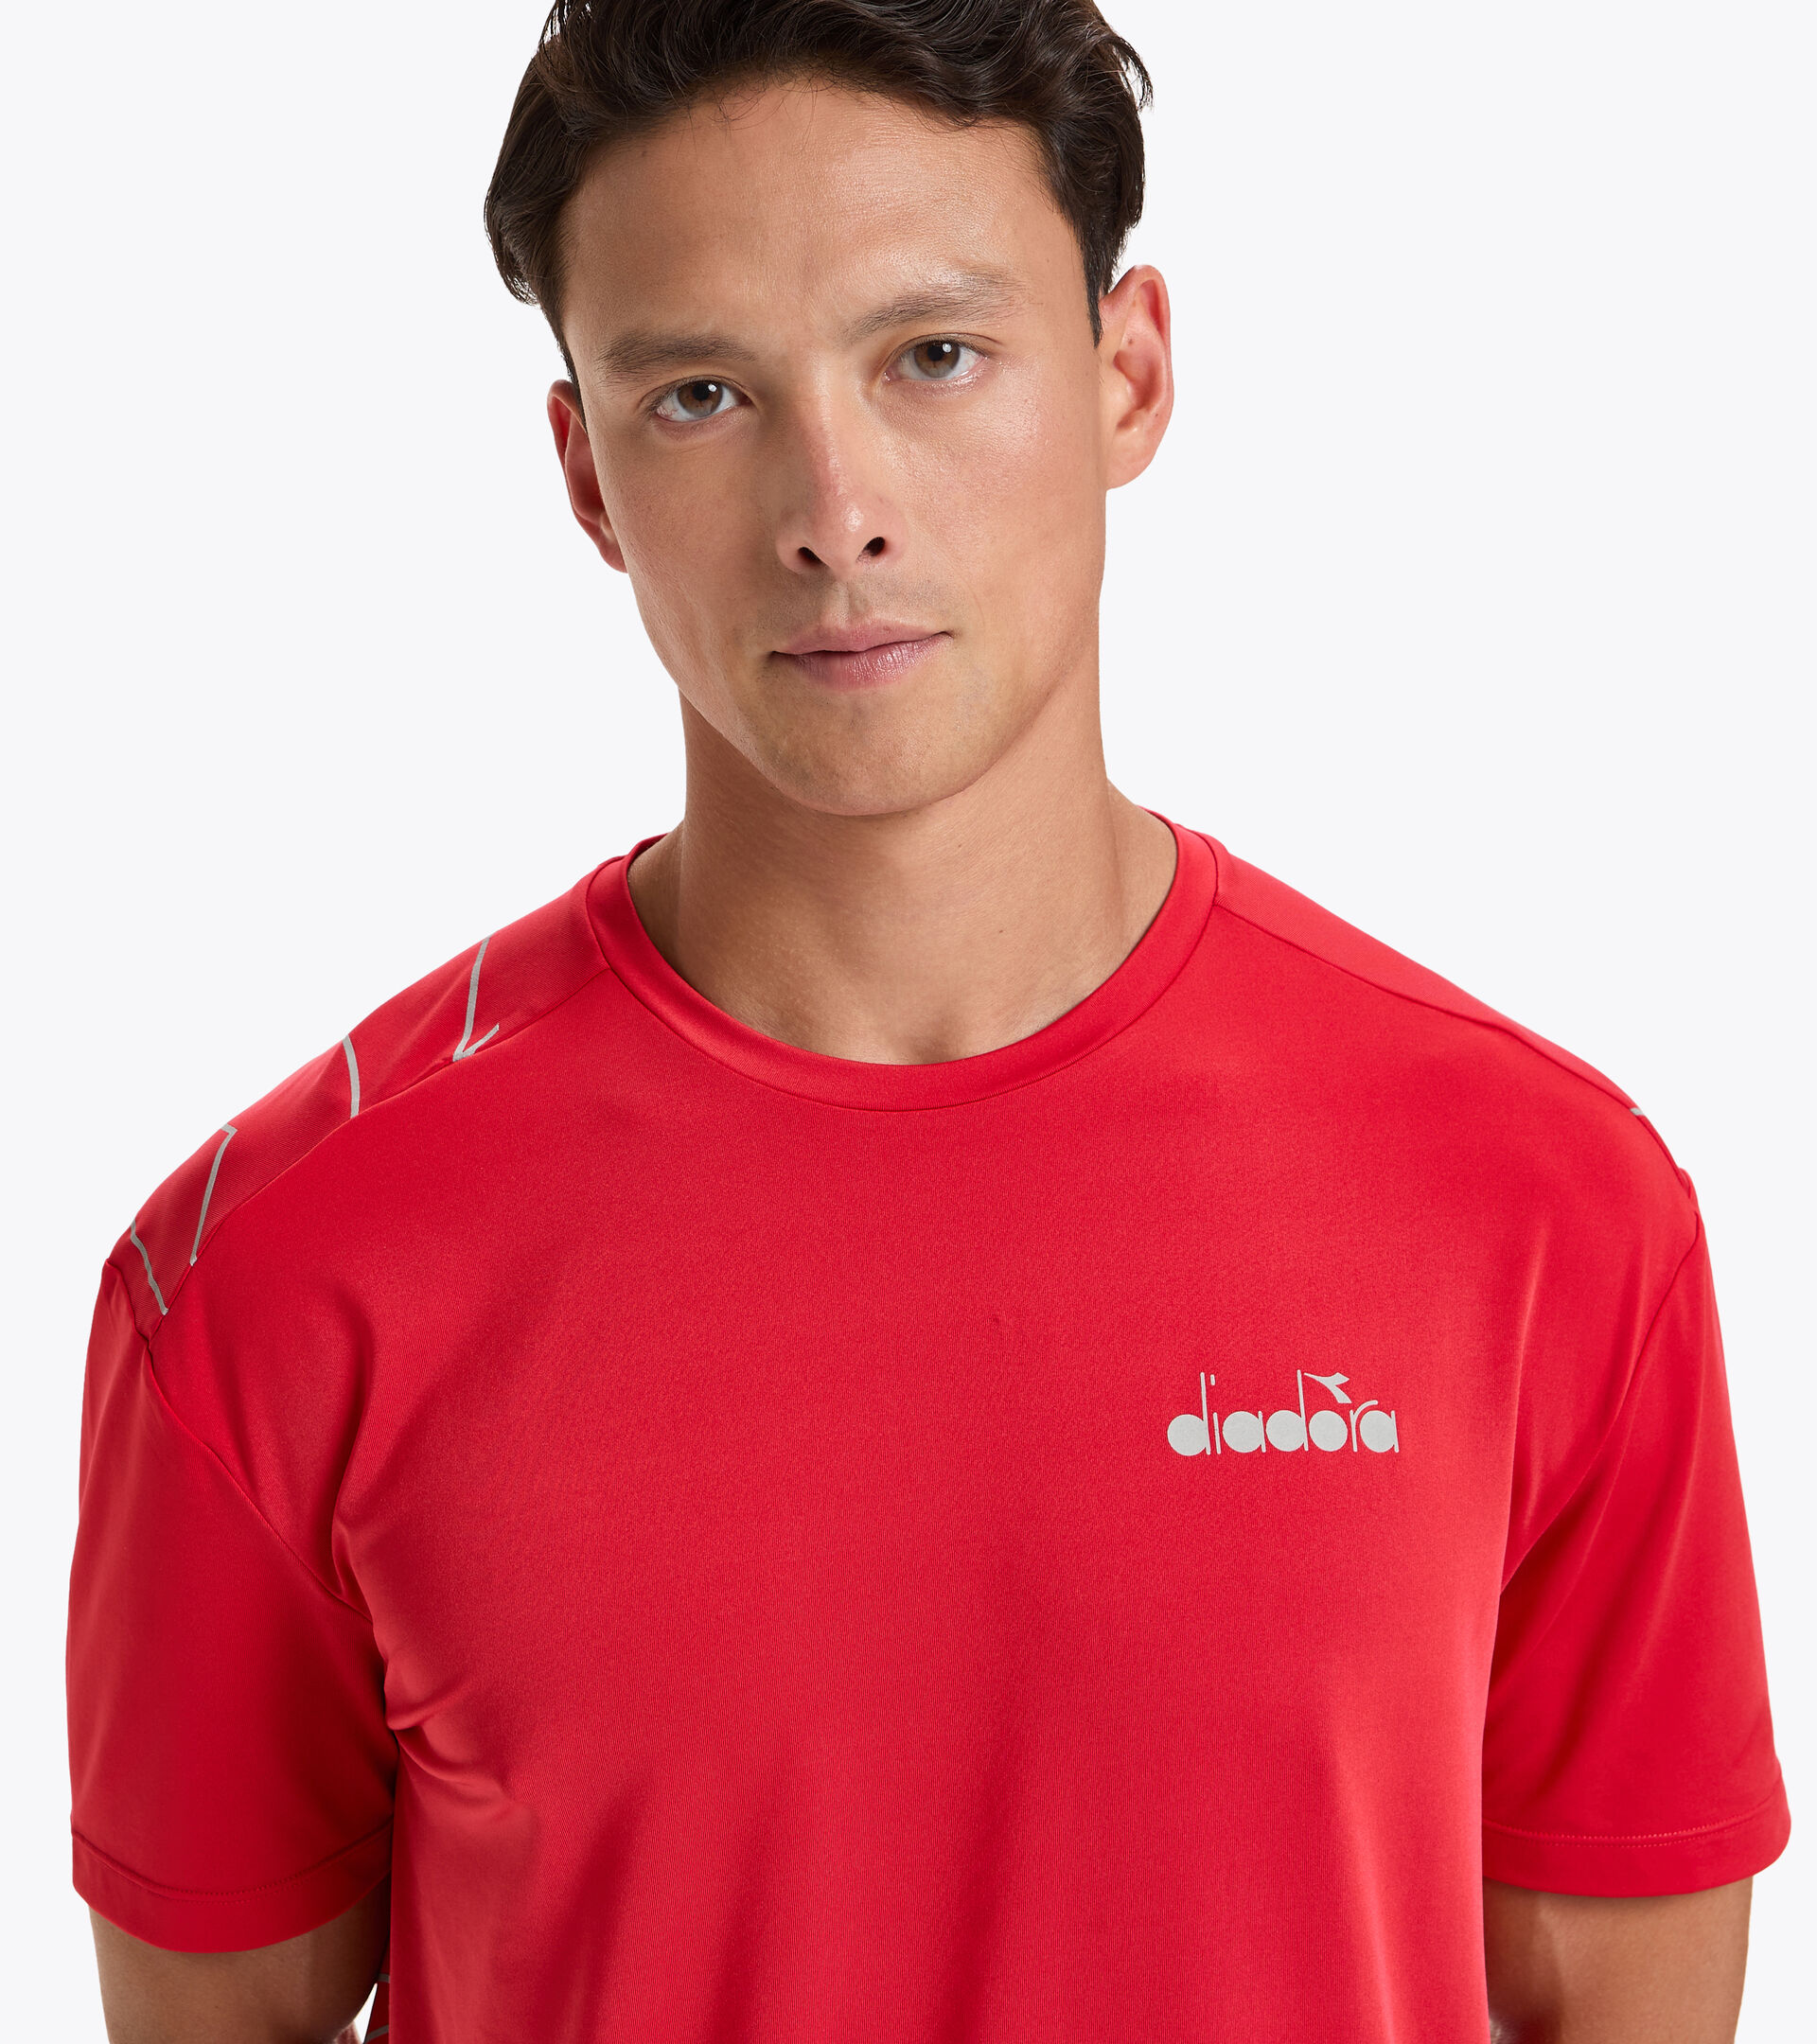 Camiseta para correr - Hombre SS T-SHIRT BE ONE TECH ROJO LICEOS - Diadora